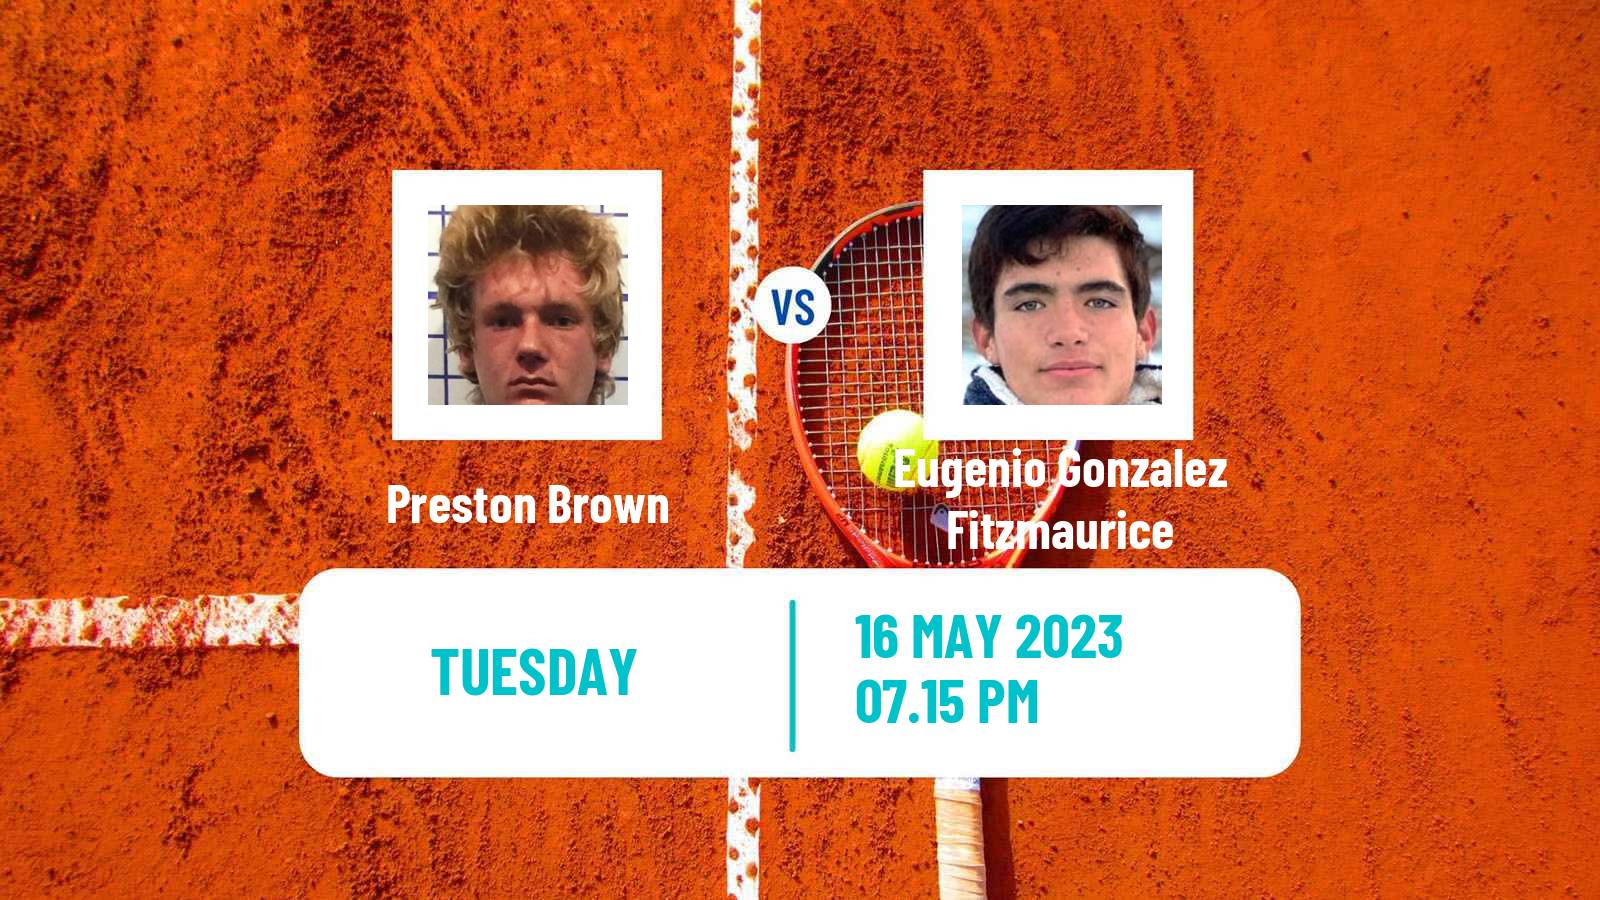 Tennis ITF M25 Xalapa Men Preston Brown - Eugenio Gonzalez Fitzmaurice